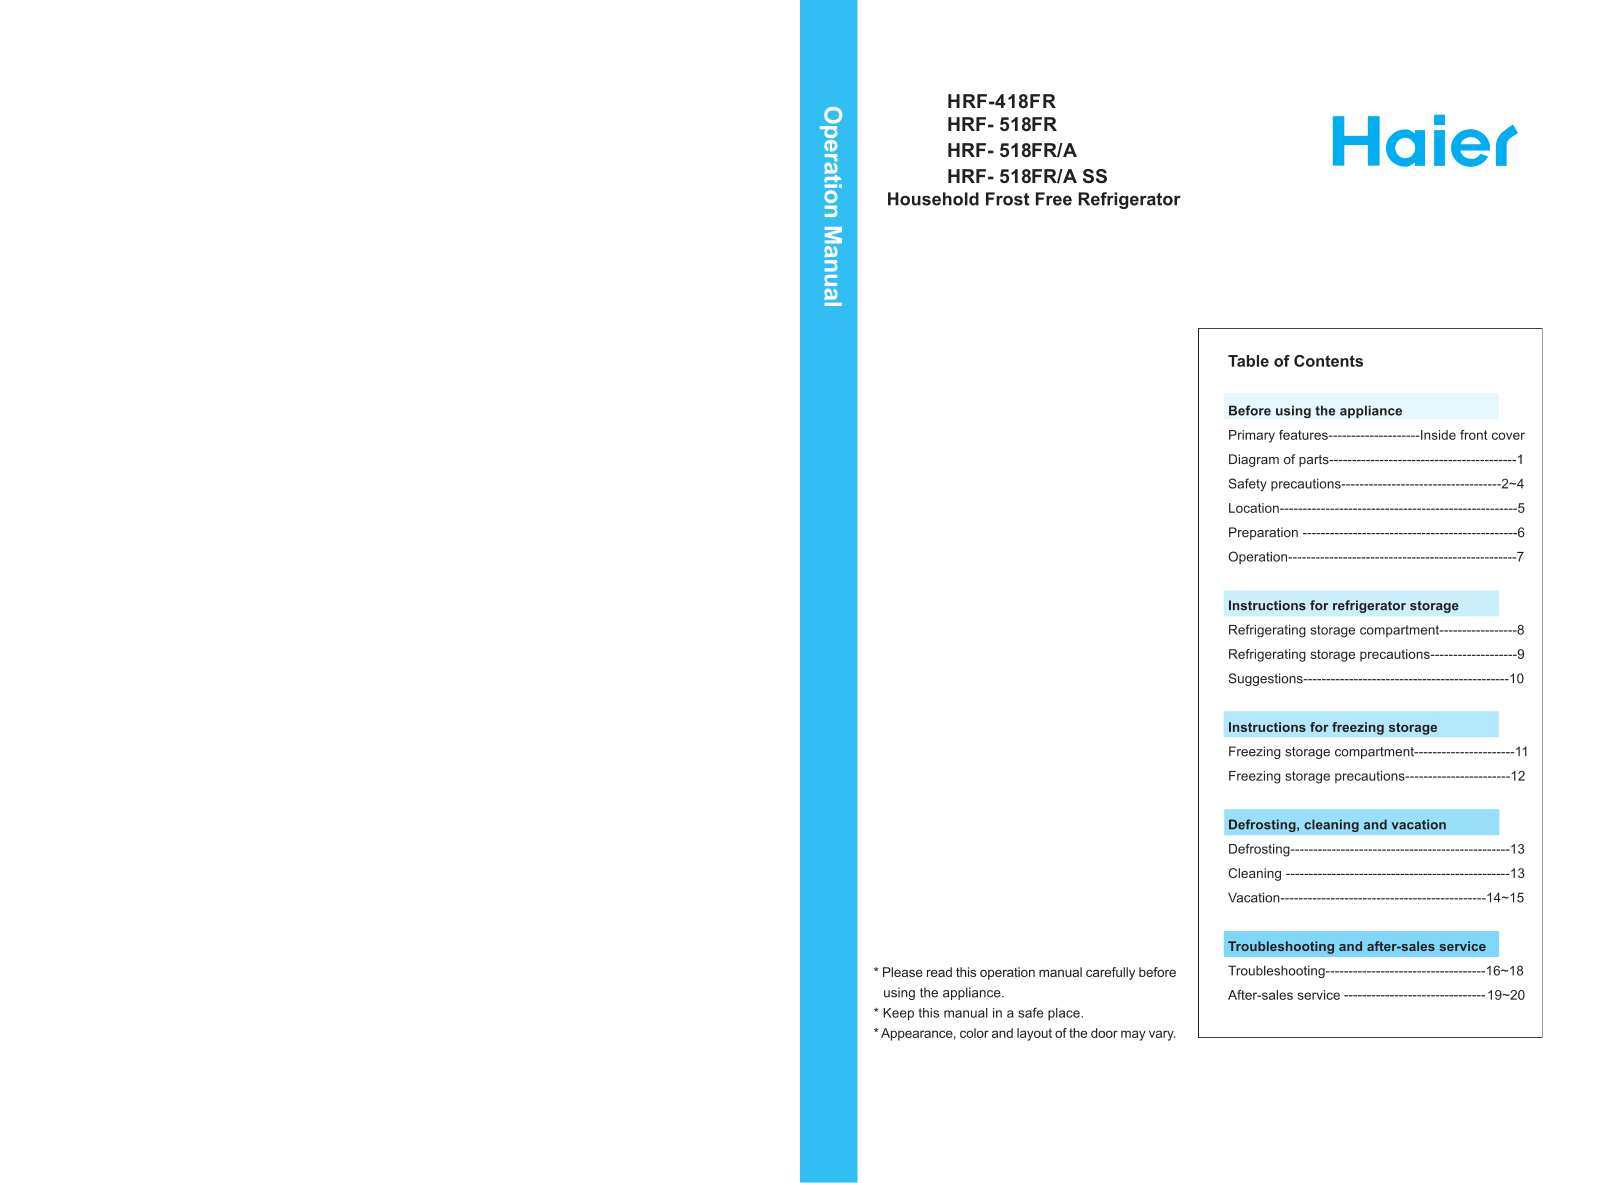 Haier HRF- 518FR, HRF-418FR User Manual